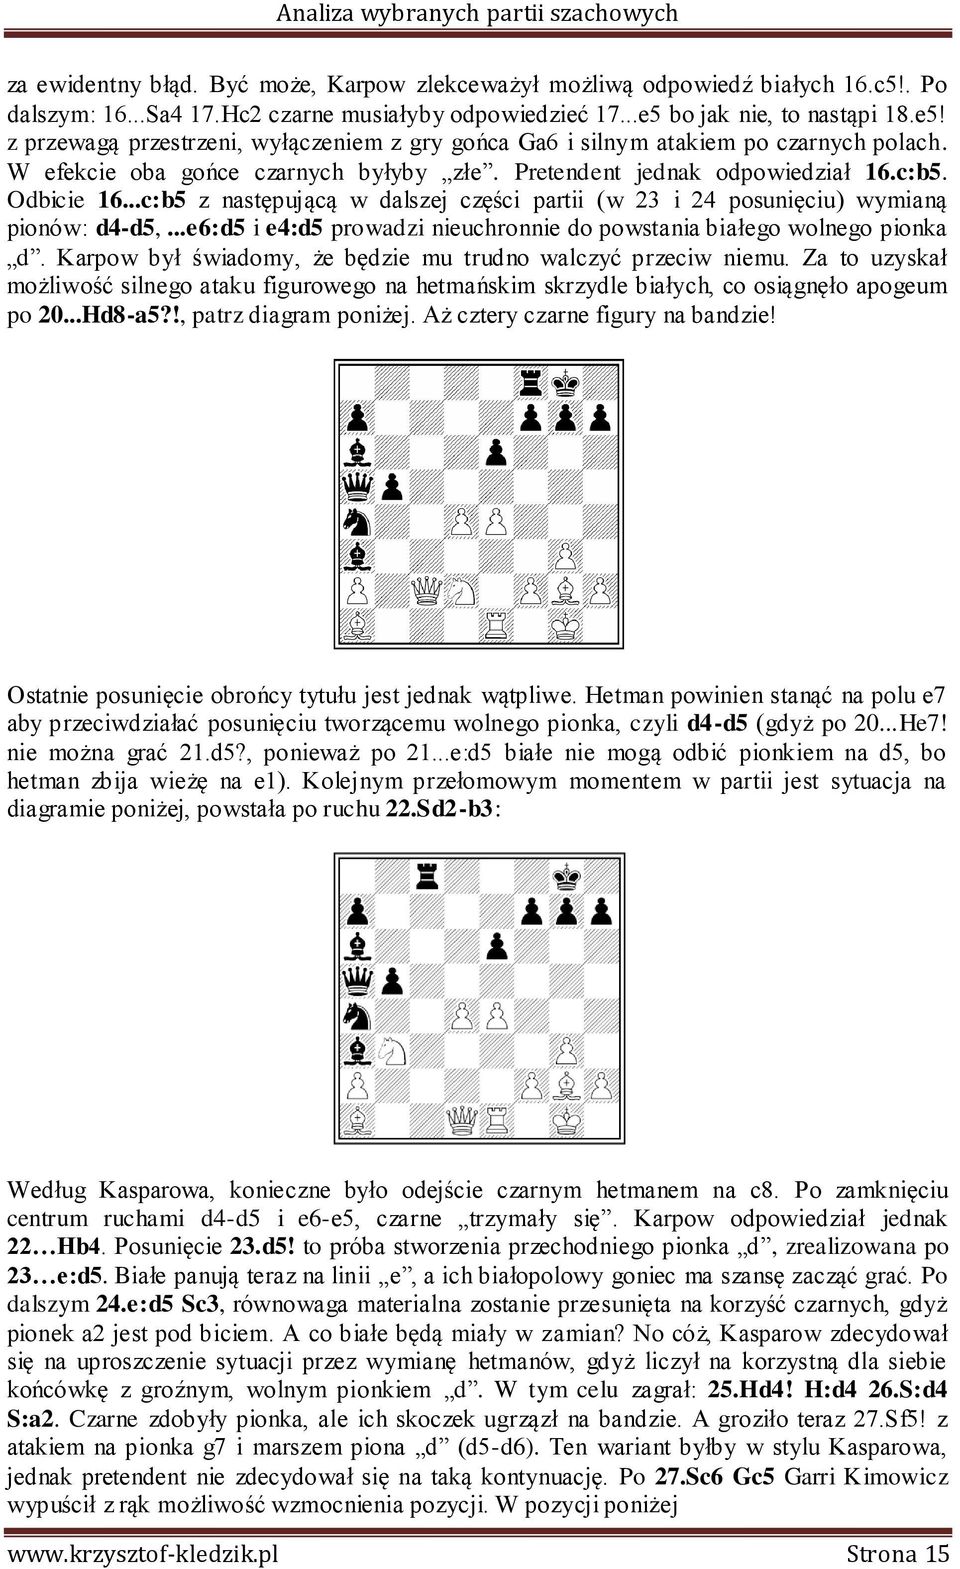 Odbicie 16...c:b5 z następującą w dalszej części partii (w 23 i 24 posunięciu) wymianą pionów: d4-d5,...e6:d5 i e4:d5 prowadzi nieuchronnie do powstania białego wolnego pionka d.